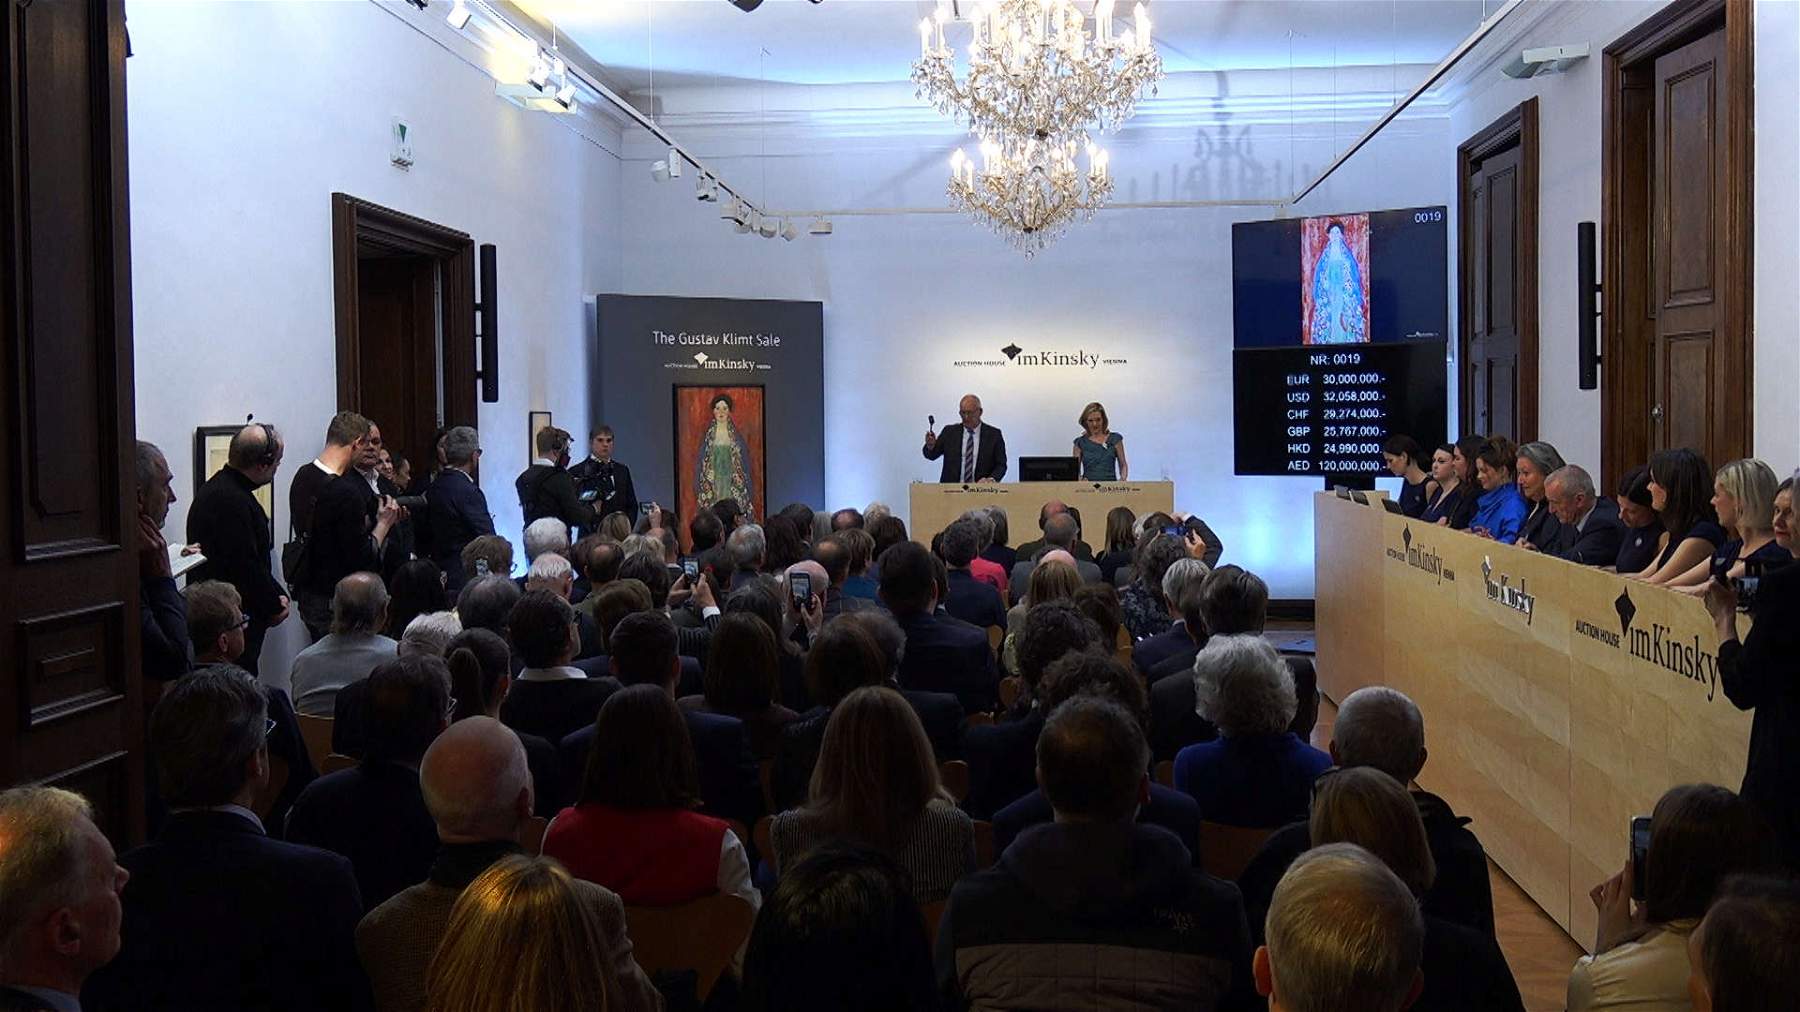 Venduto per 30 milioni di euro il ritratto di Klimt riscoperto a inizio anno